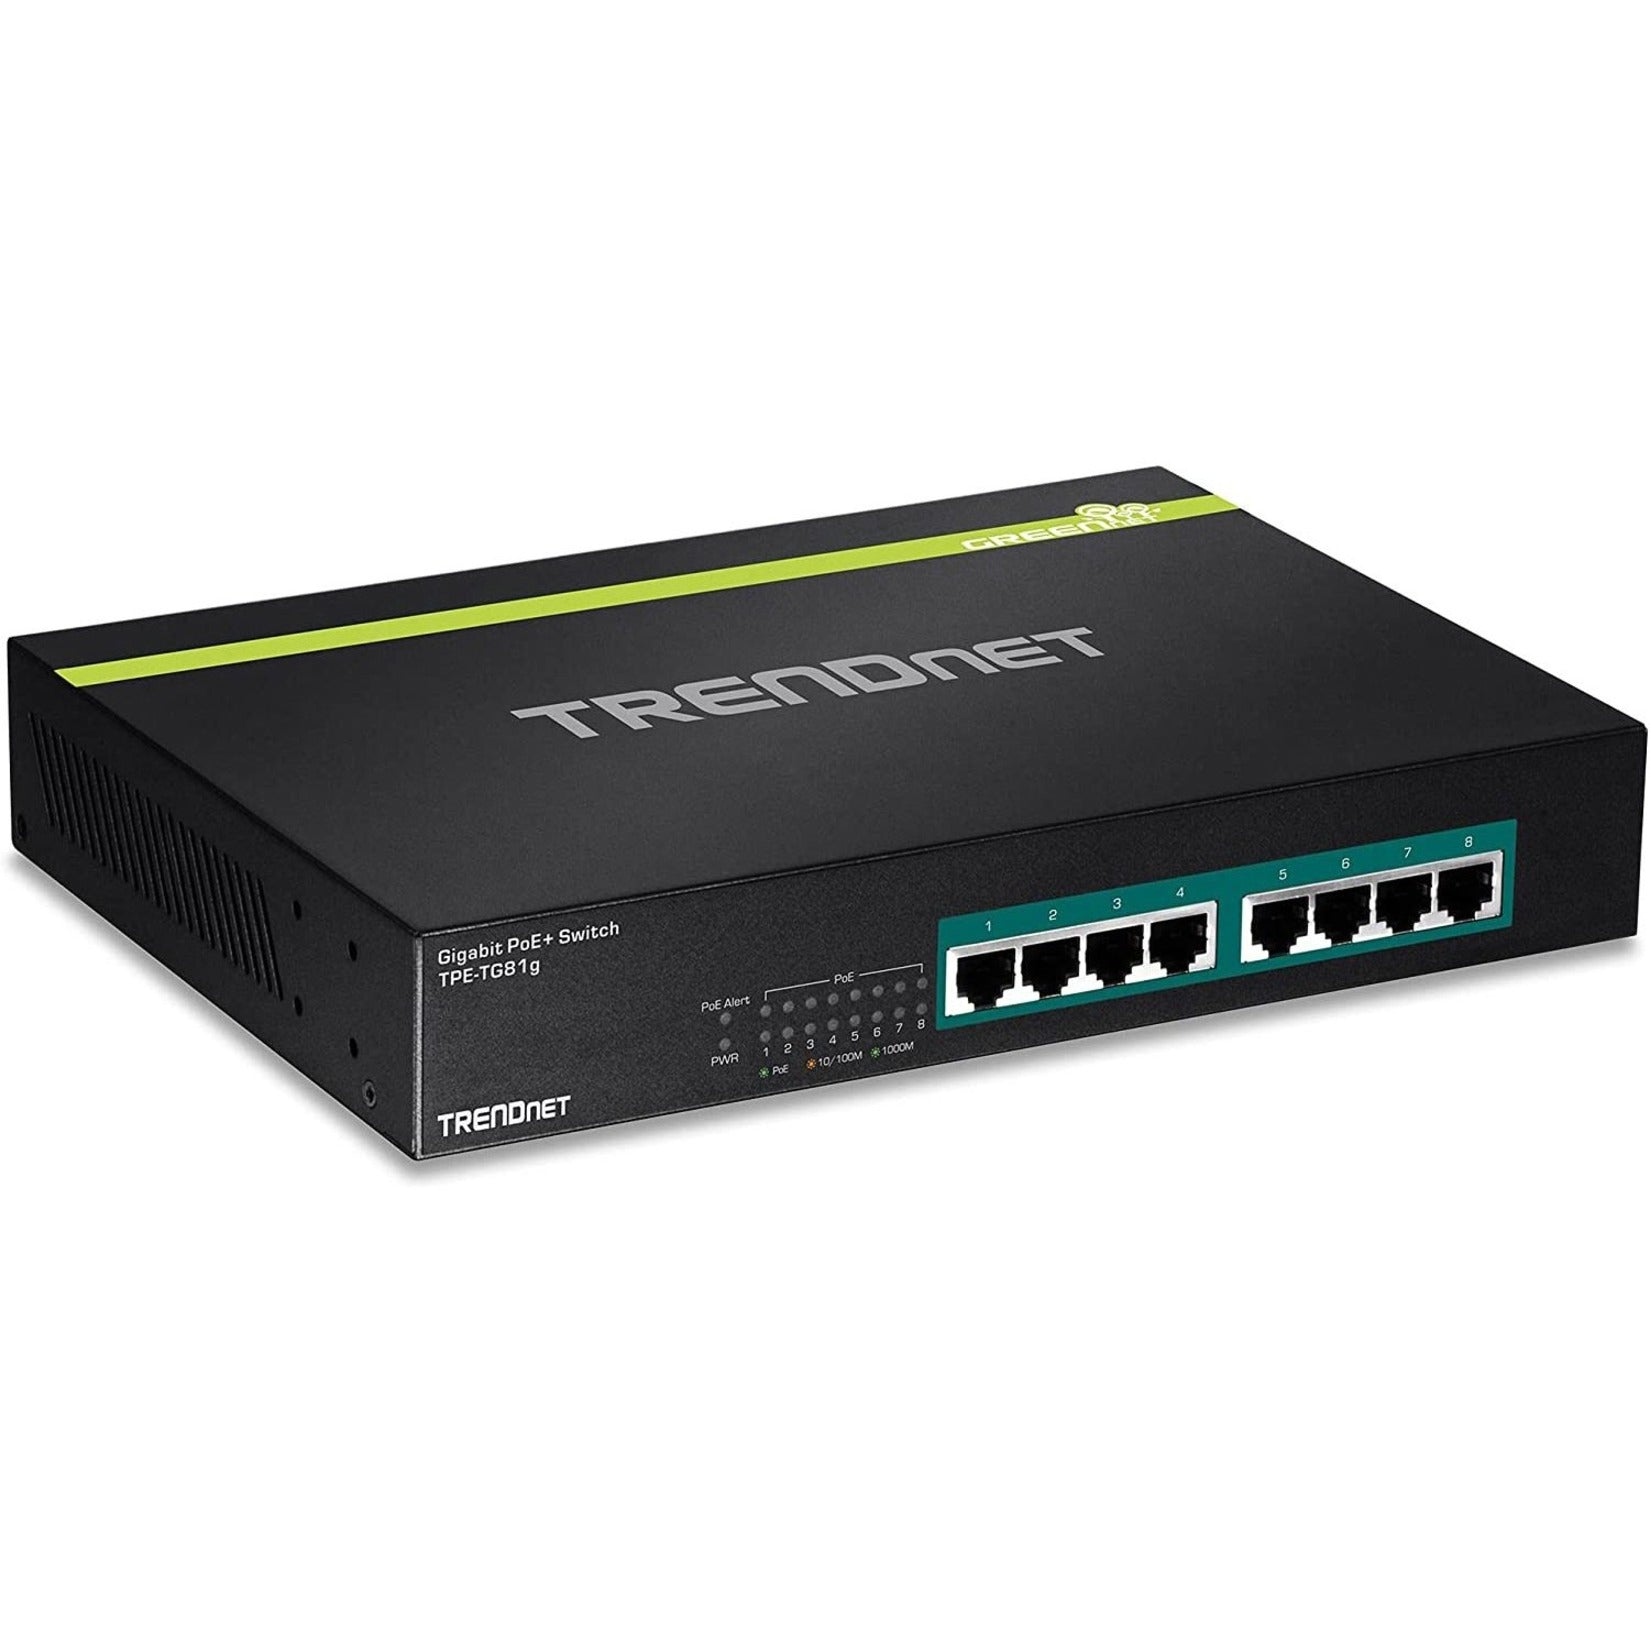 TRENDnet TPE-TG81g 8-port Gigabit GREENnet PoE+ Switch, rack mountable